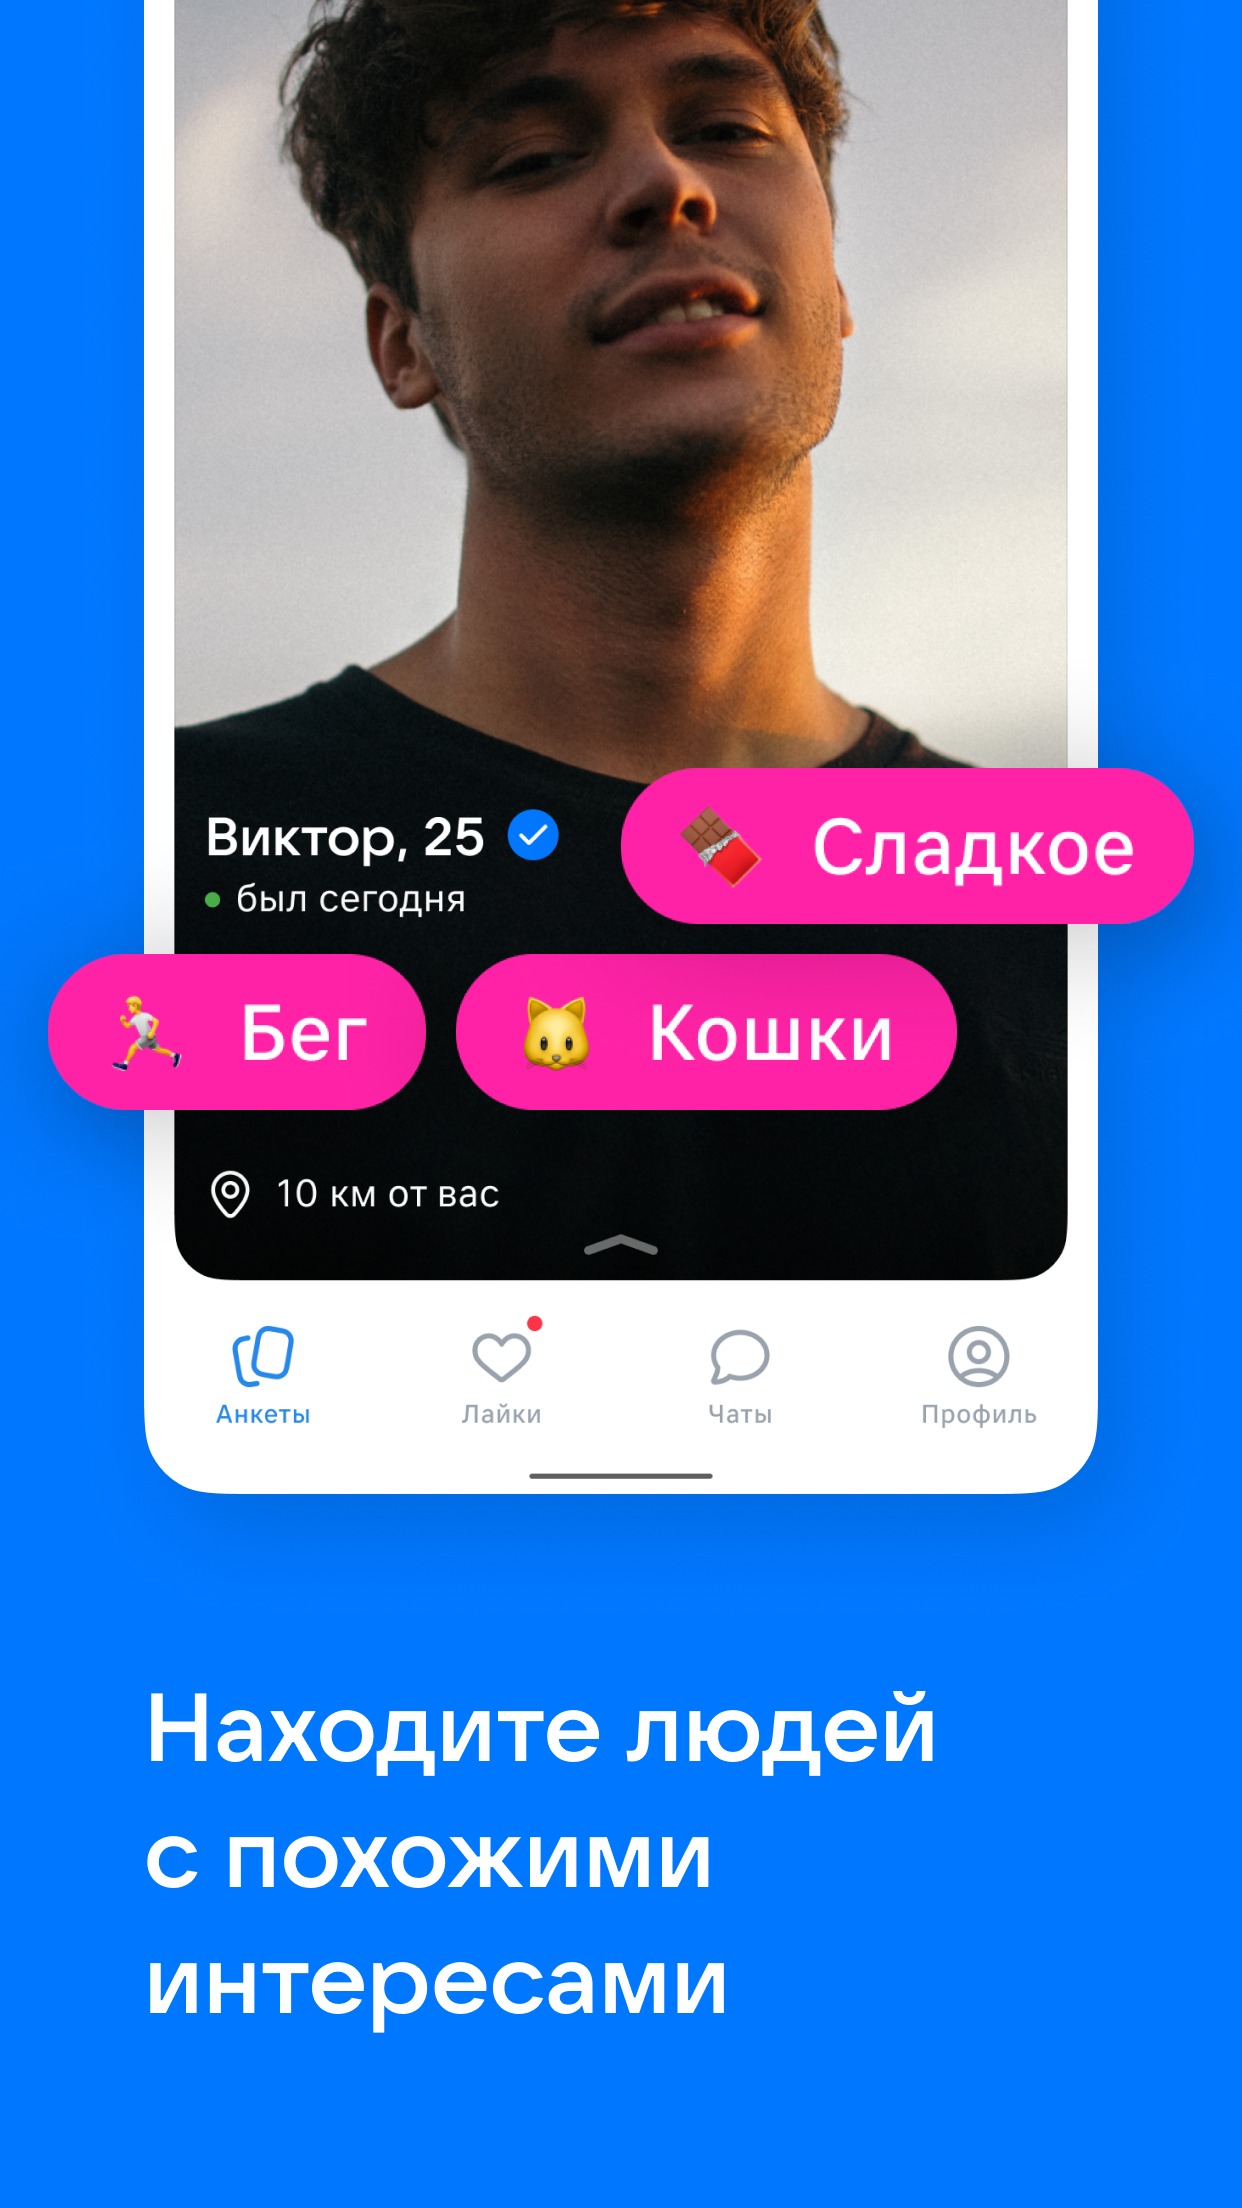 ВКонтакте» запускает отдельное приложение сервиса «VK Знакомства» -Лайфхакер